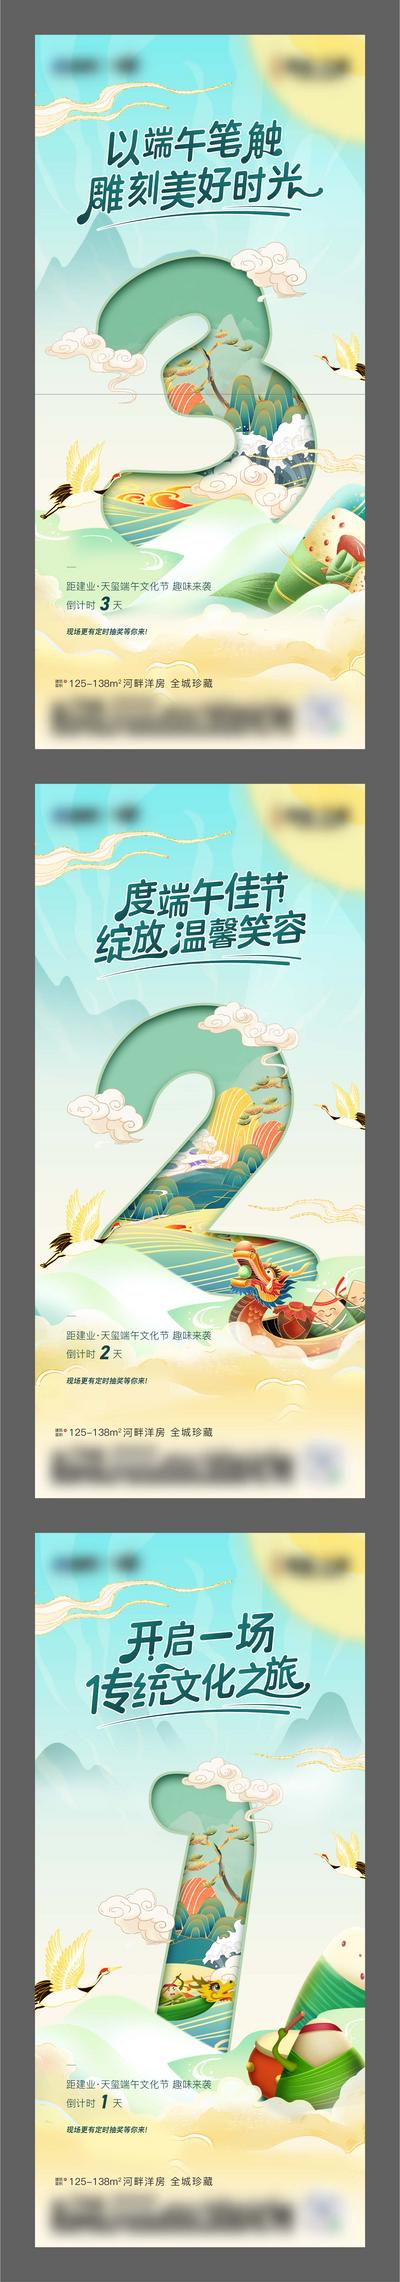 南门网 海报 地产 中国传统节日 端午节 倒计时 数字 促销 热销 插画